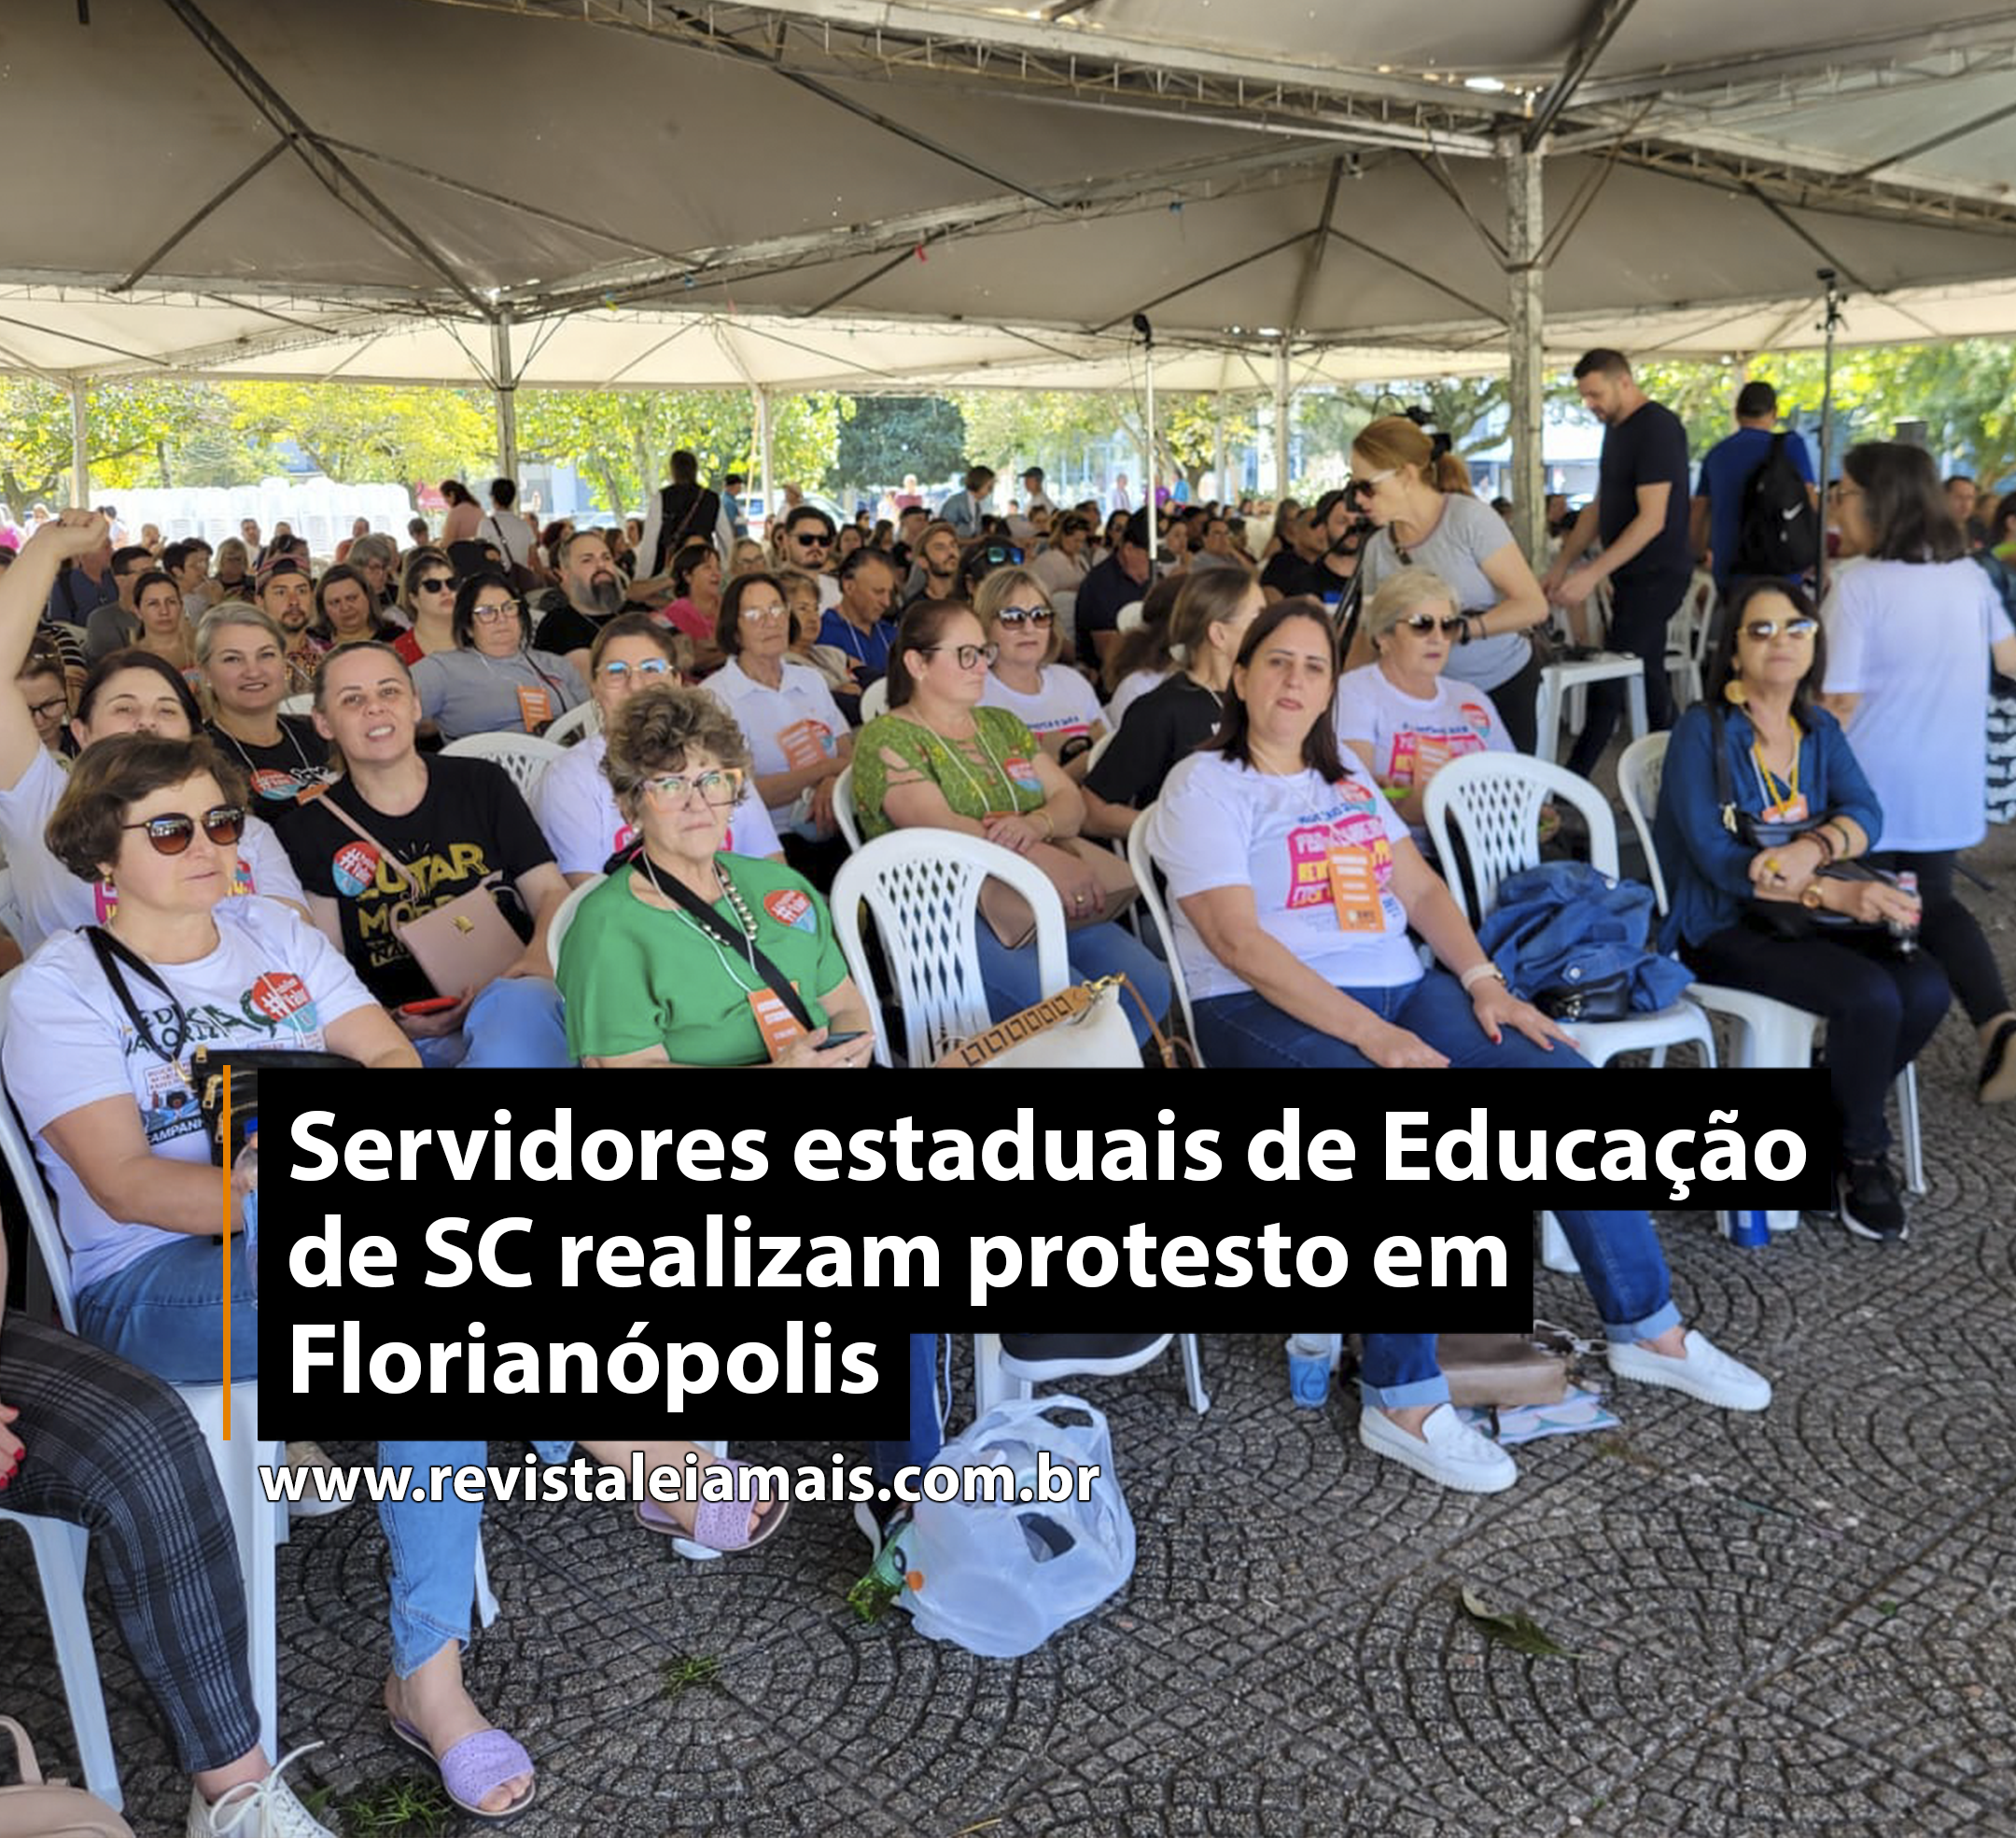 Servidores estaduais de Educação de SC realizam protesto em Florianópolis